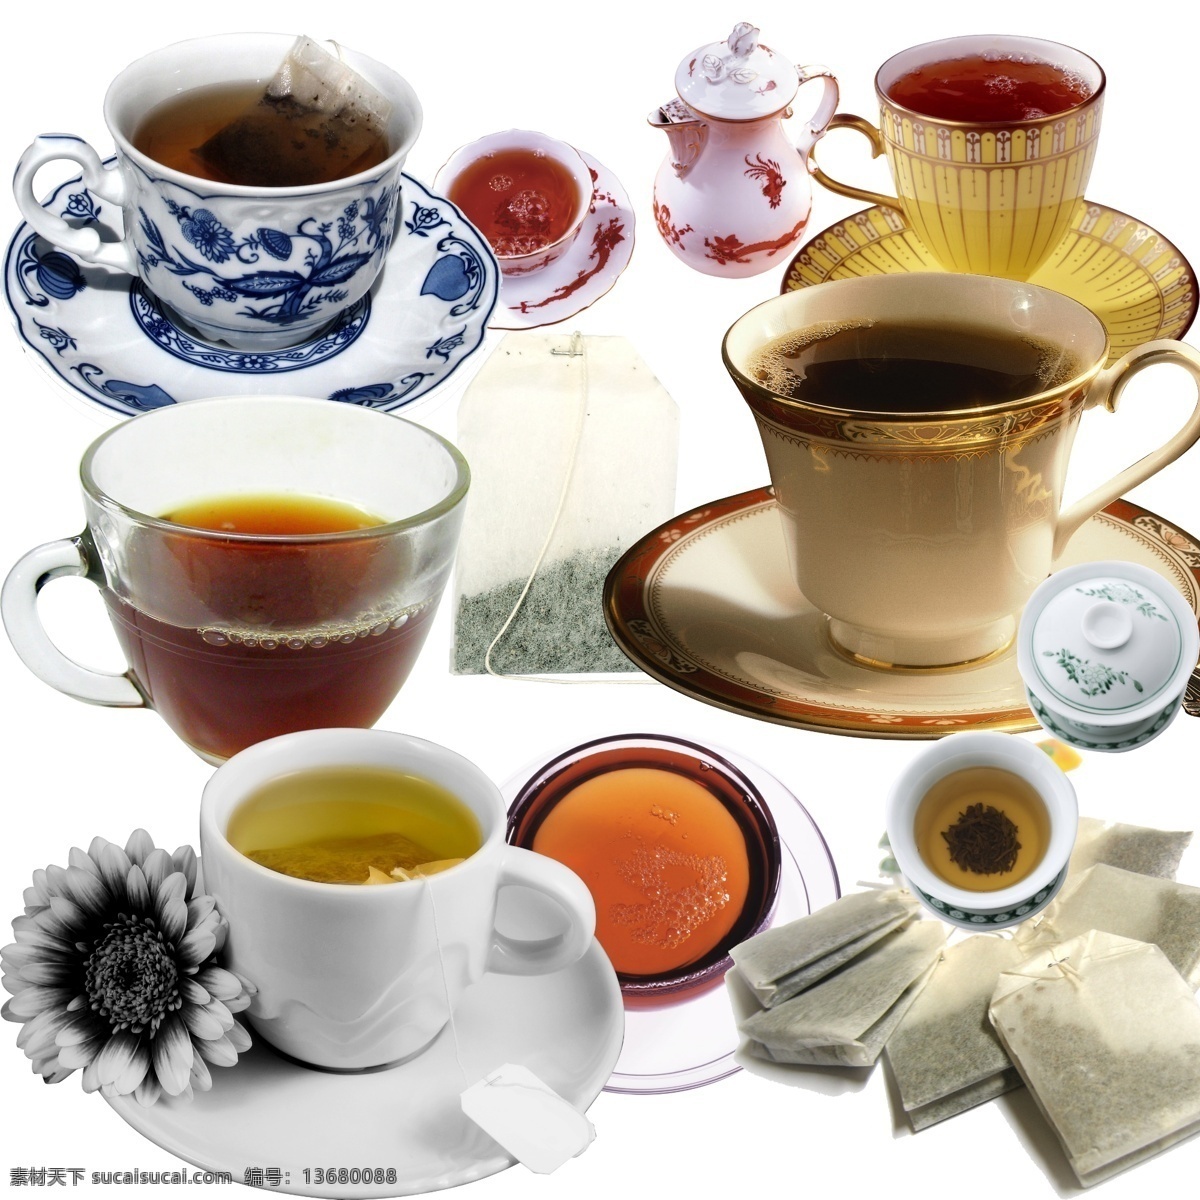 茶 茶包 茶杯 茶壶 茶具 茶水 茶叶 大红袍 模板下载 茶茶水 中国茶 红茶 菊花茶 茶叶包 泡茶 源文件 淘宝素材 其他淘宝素材